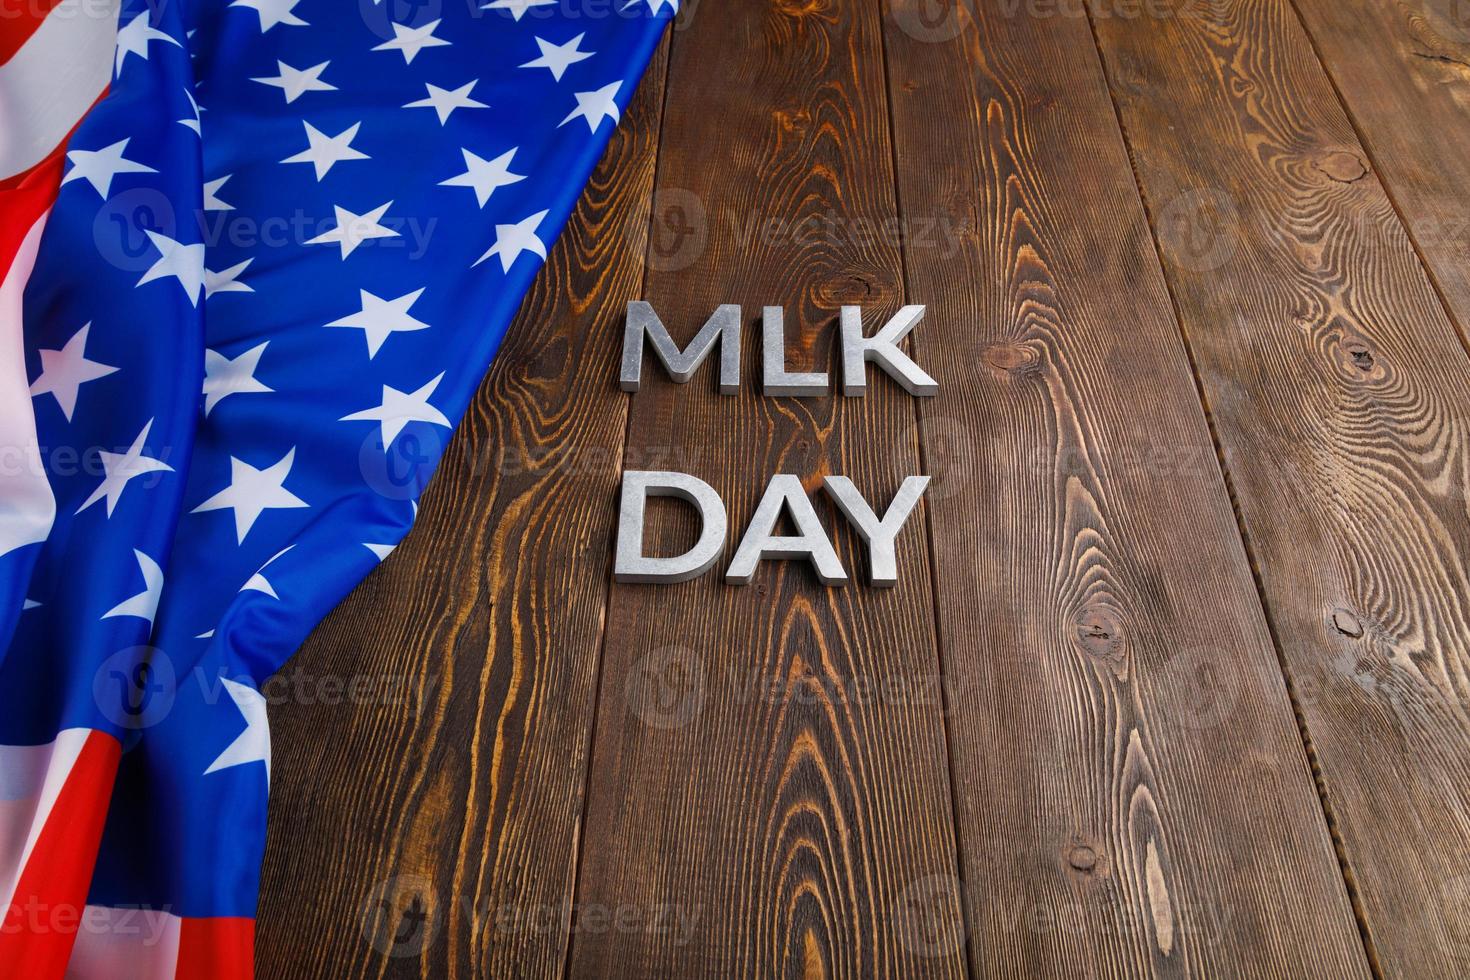 le mot mlk day posé avec des lettres en métal argenté sur une surface en bois avec un drapeau américain froissé sur le côté gauche photo